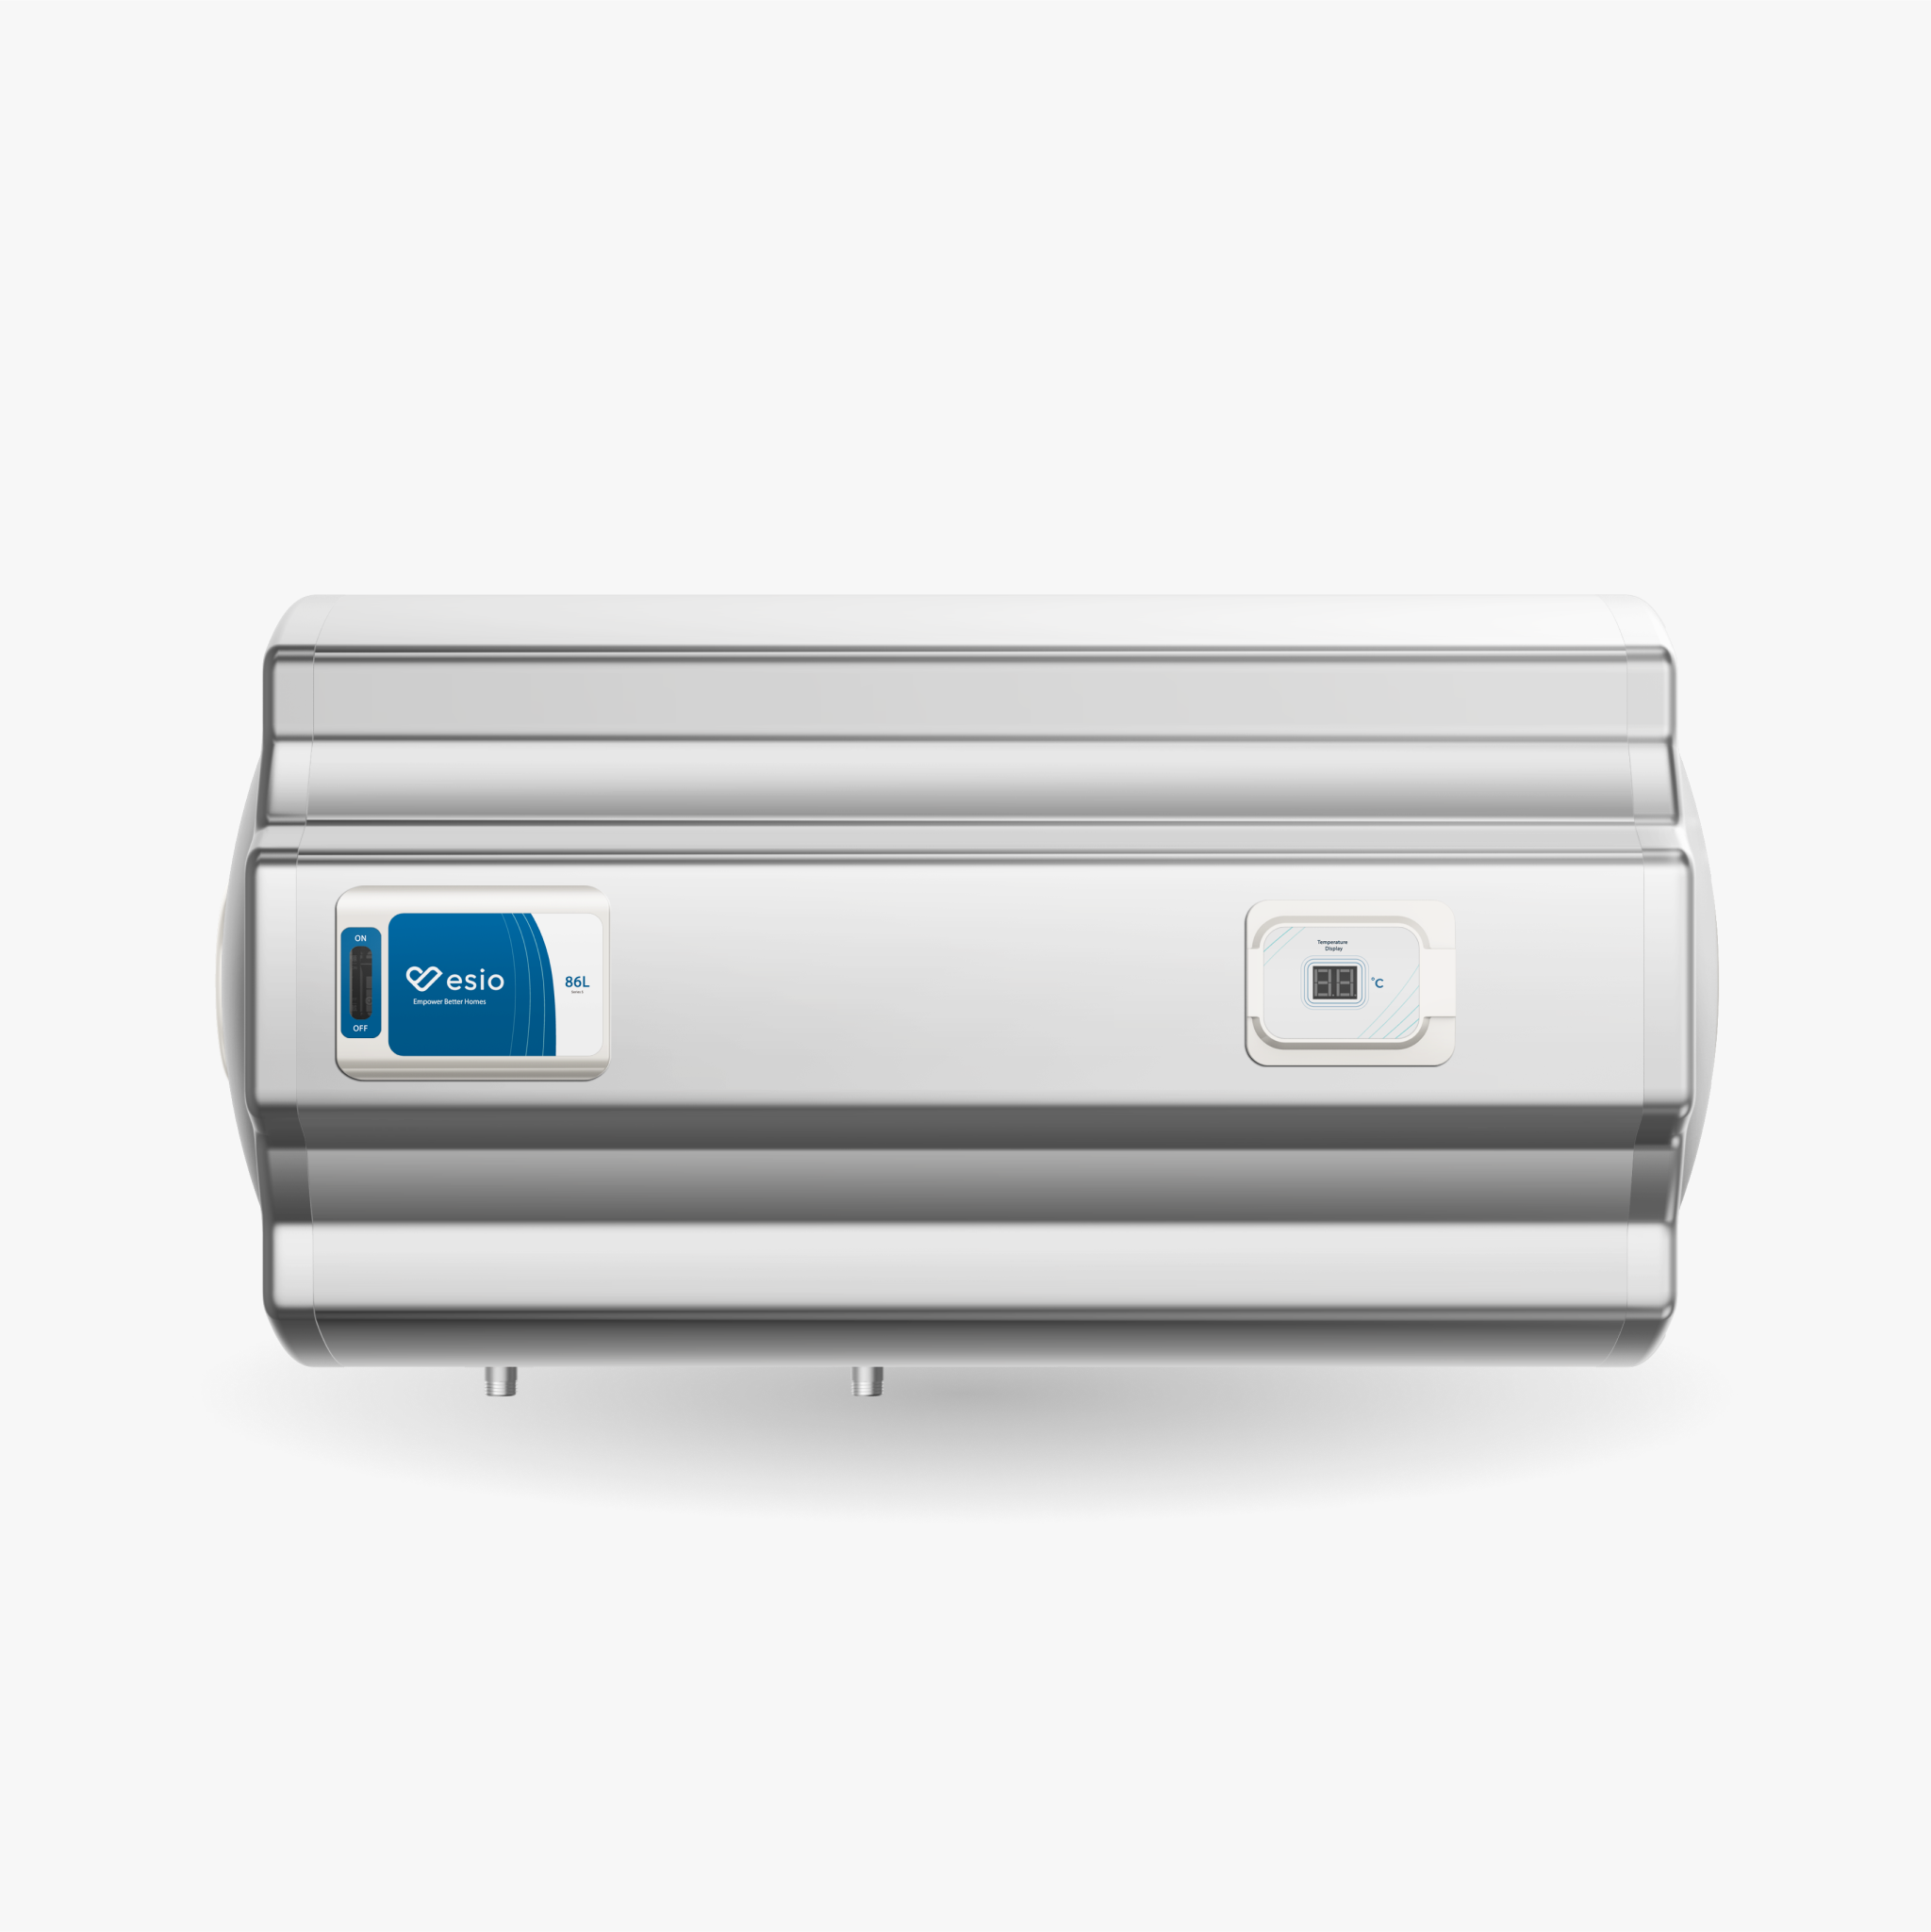 EM-8645H (Esio Storage Water Heater)